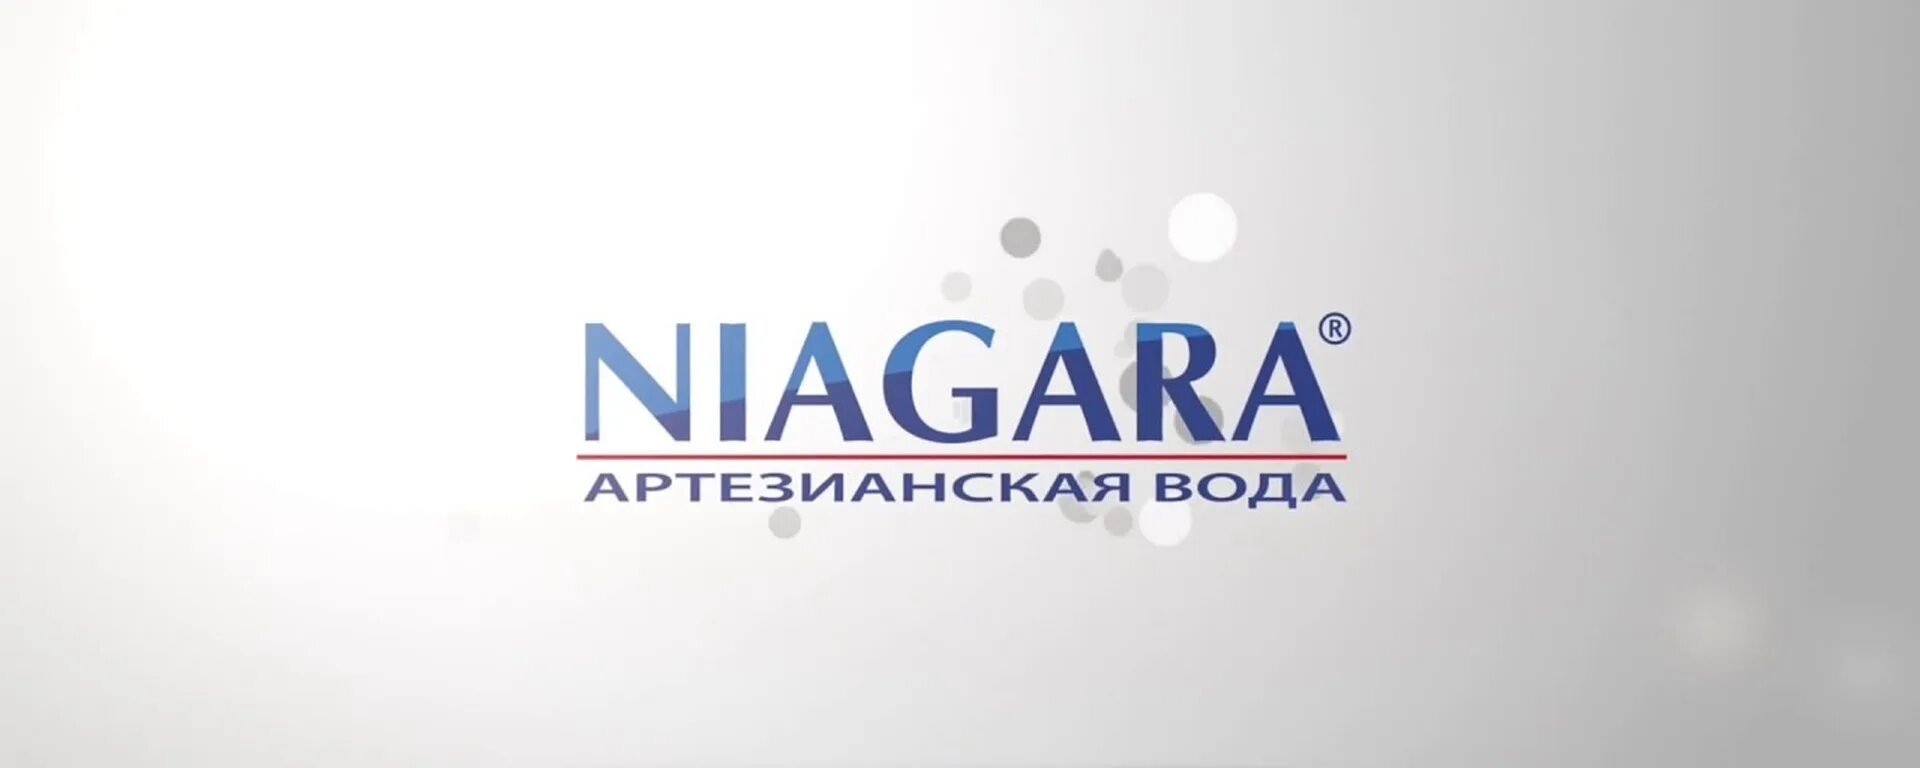 Вода ниагара нижний. Ниагара лого. Niagara вода. Вода Ниагара лого. Национальная водная компания Niagara логотип.